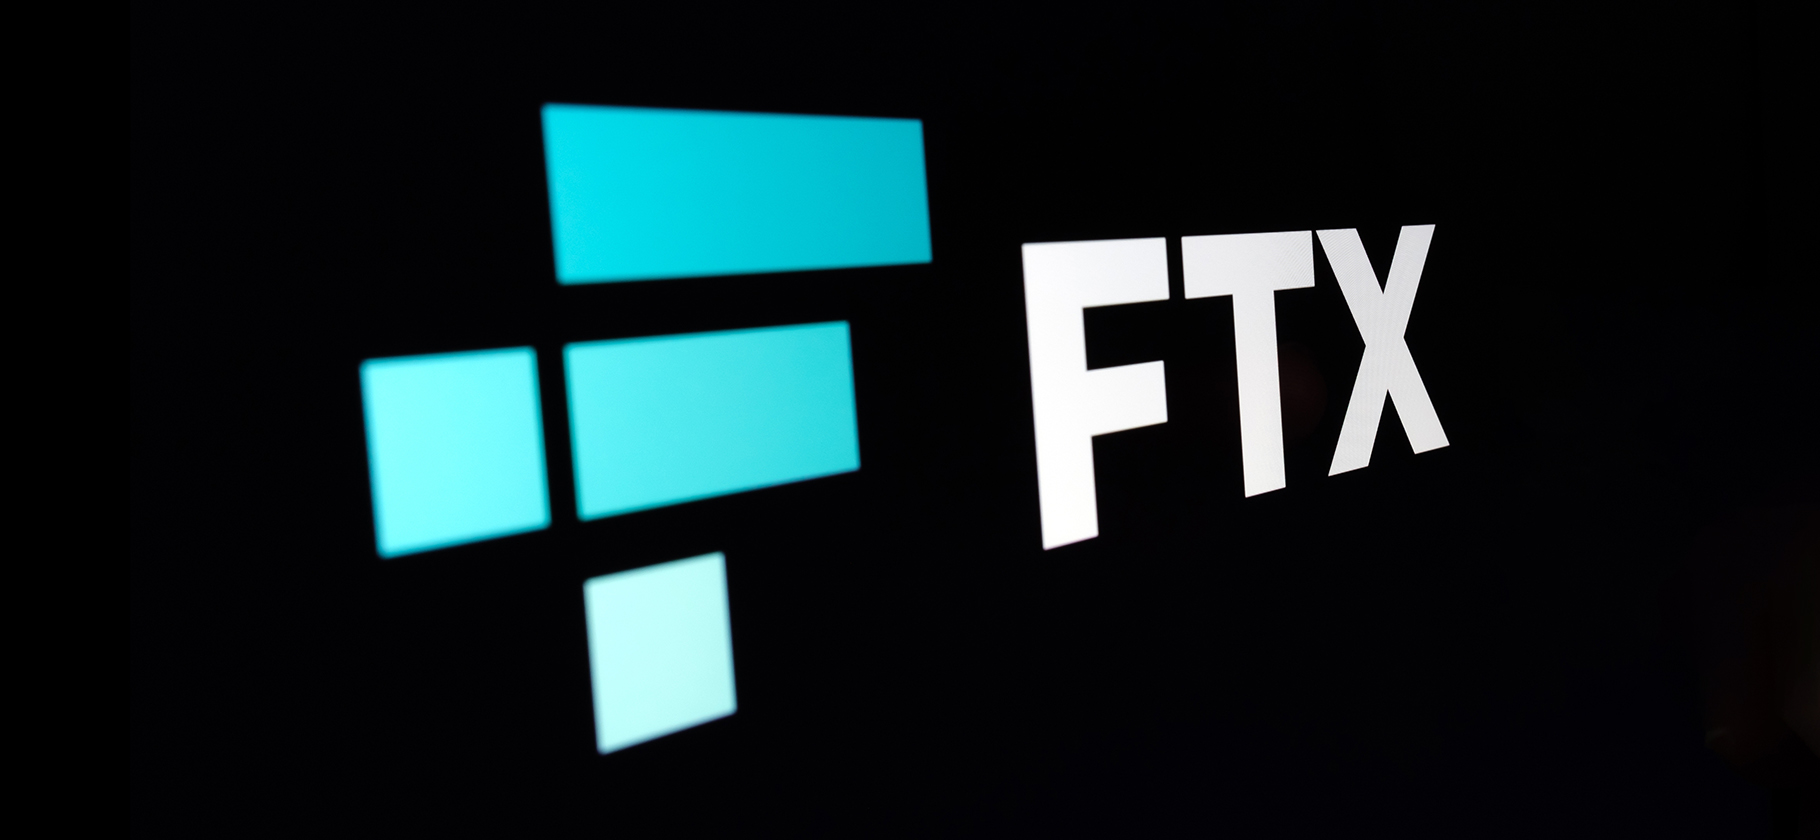 Одна из крупнейших криптобирж в мире, FTX, обанкротилась: что произошло и какие последствия